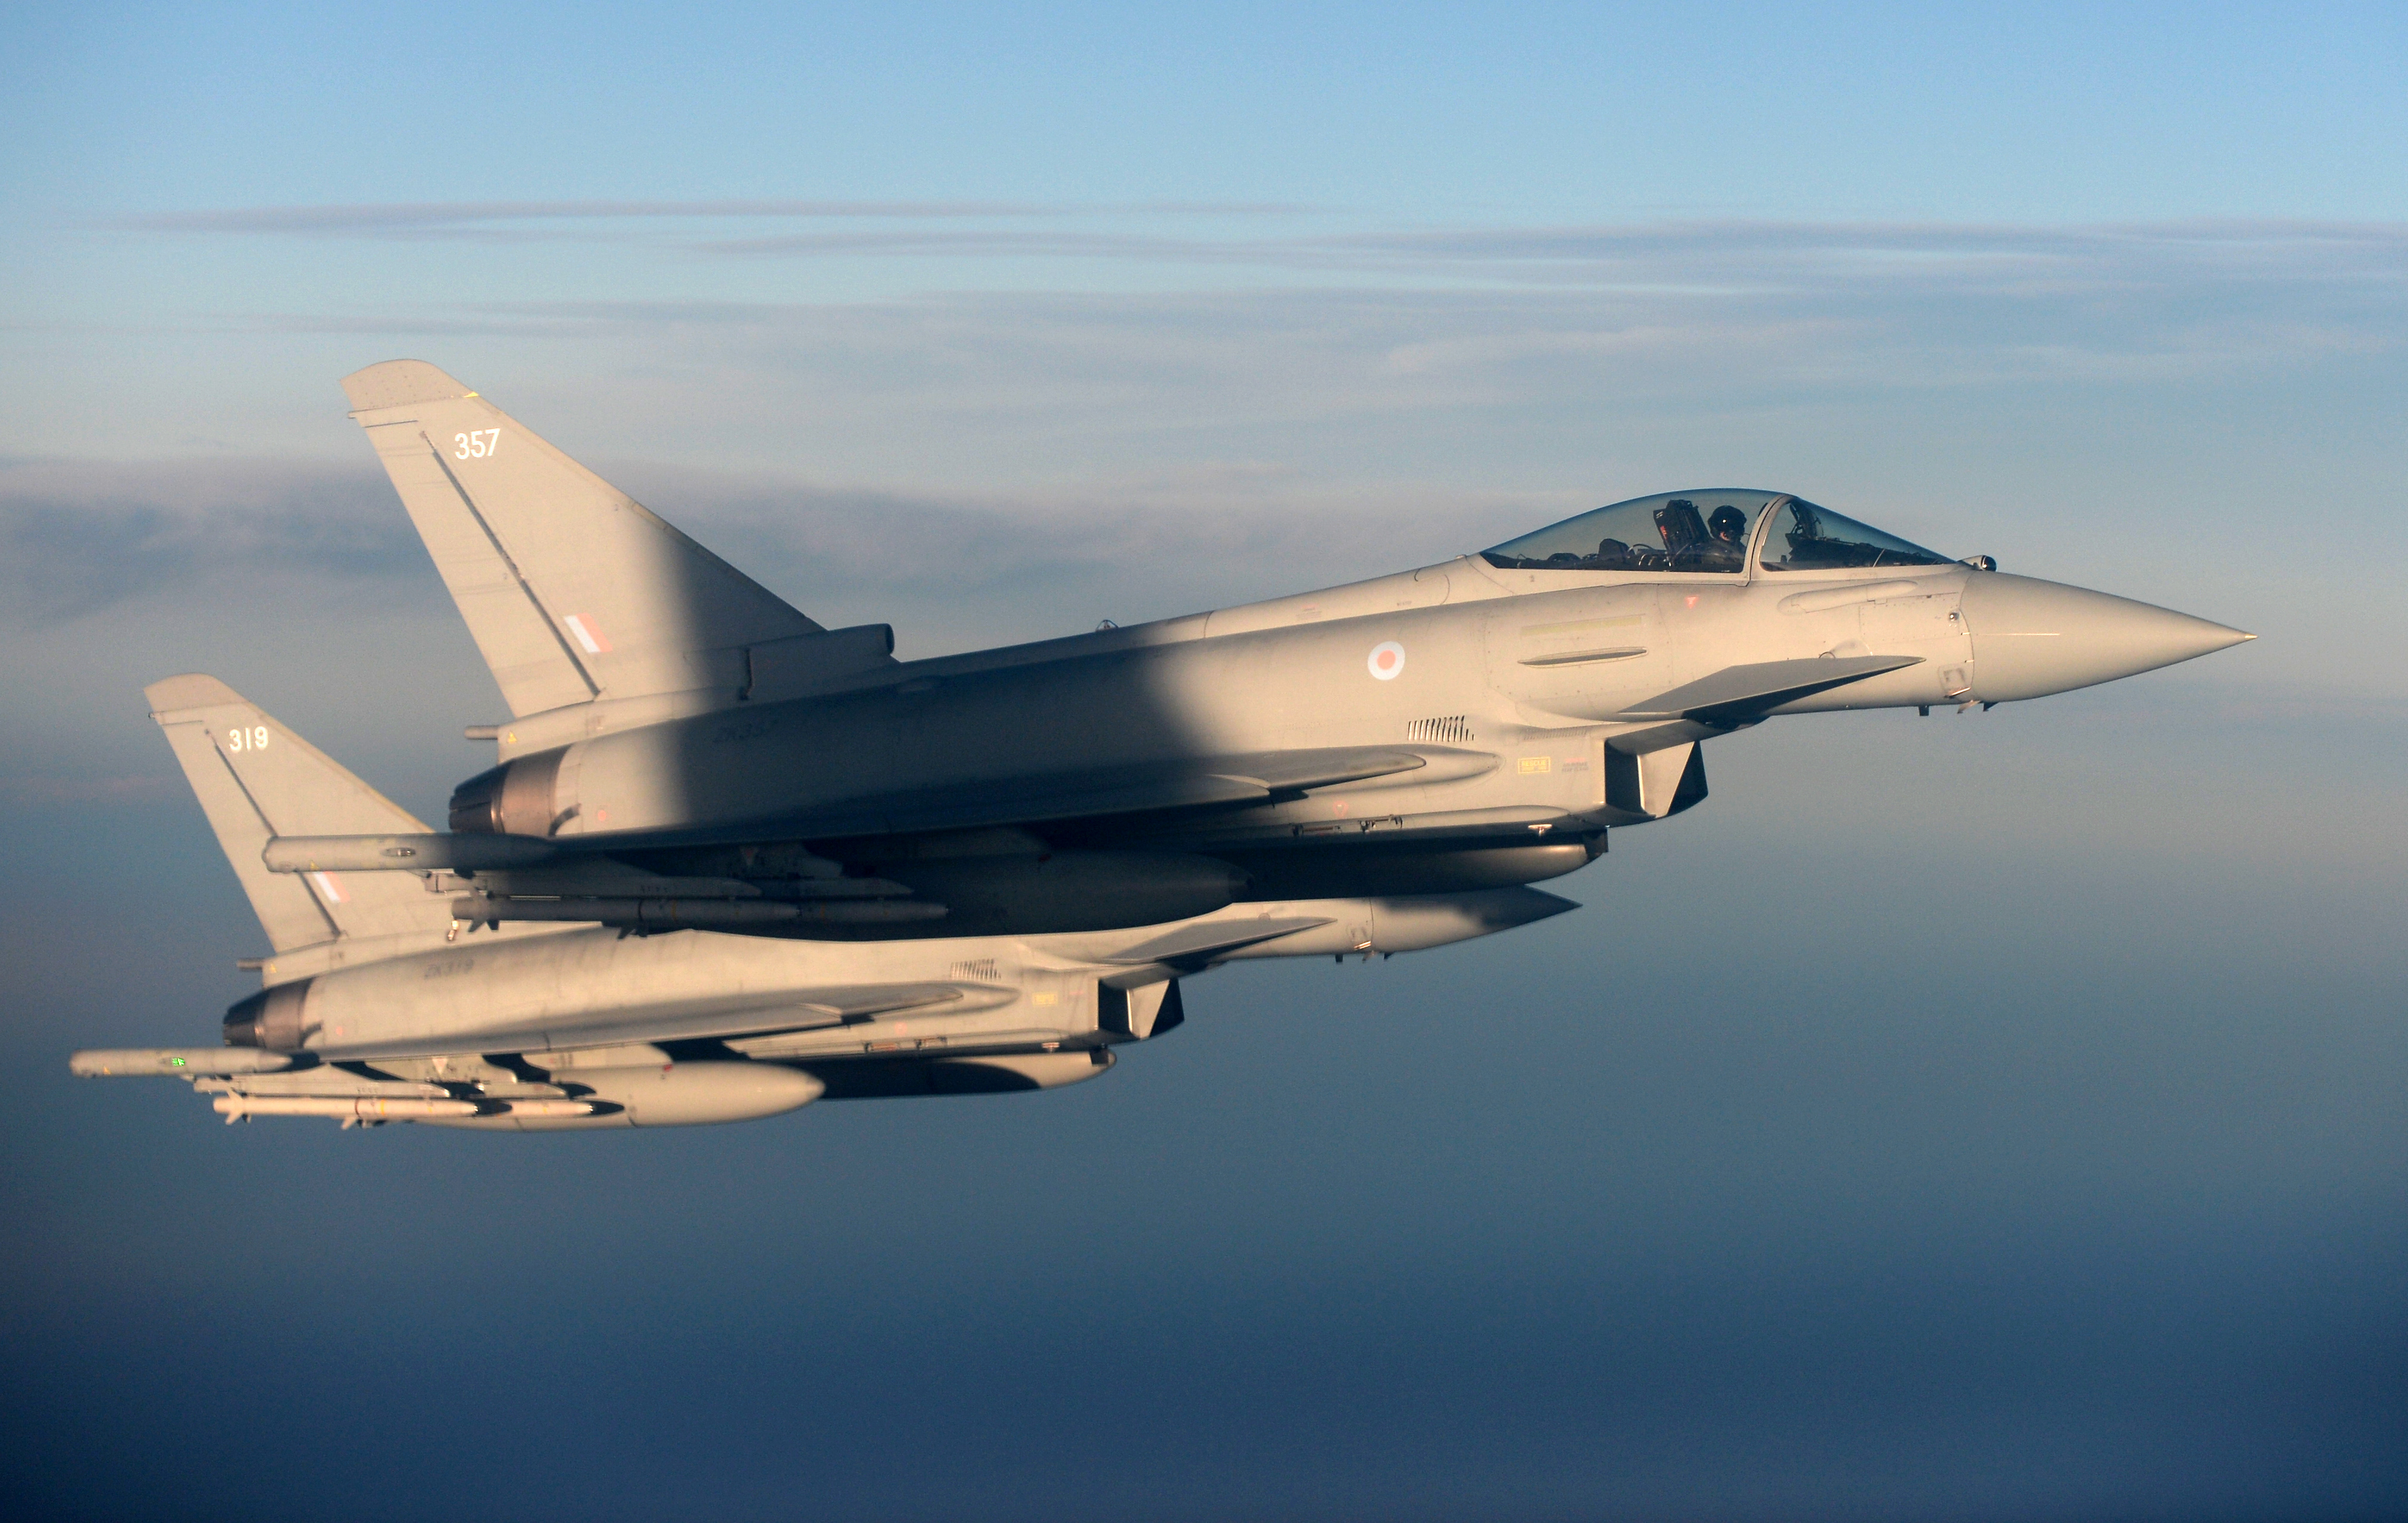 La OTAN prepara las mayores maniobras aéreas de su historia en una demostración de fuerza a Rusia